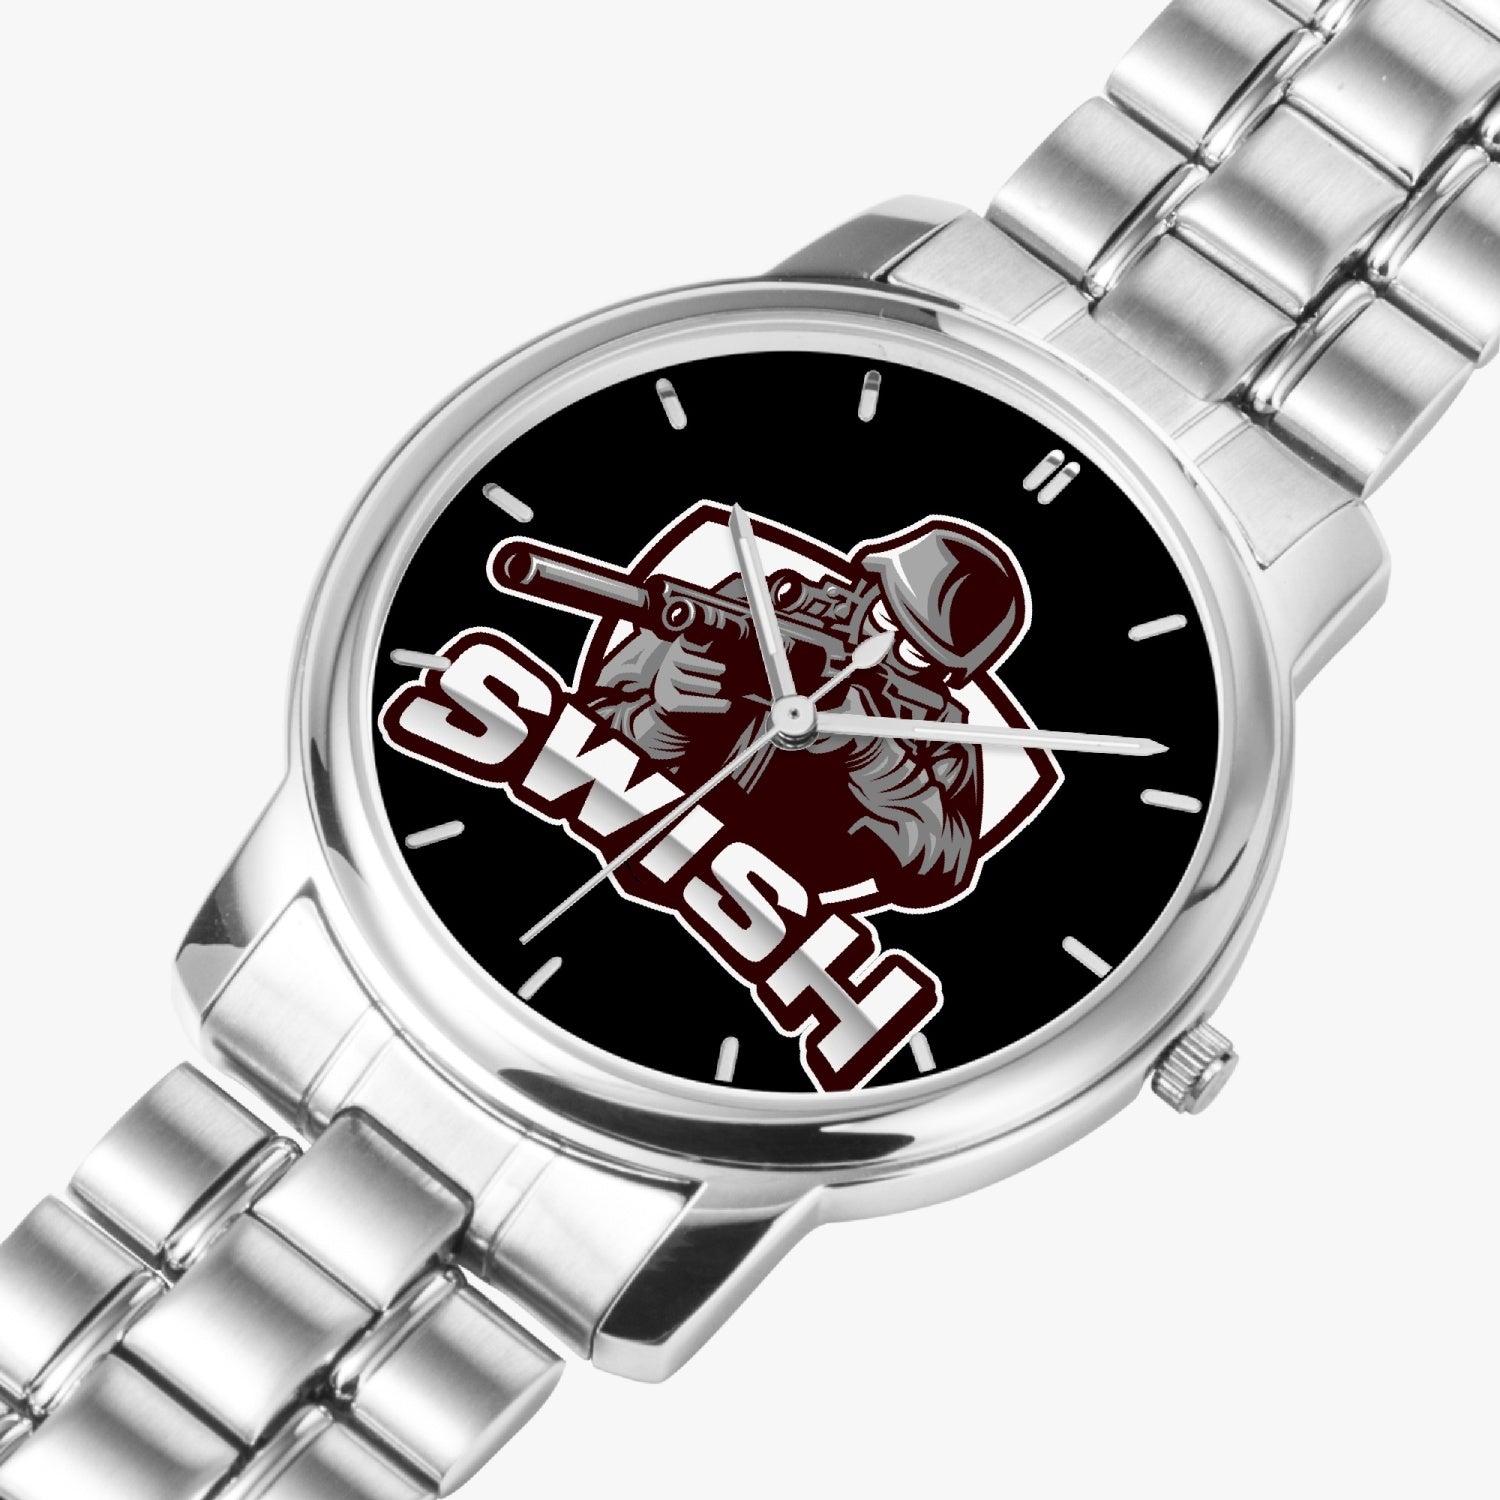 swi Stainless Steel Quartz Watch